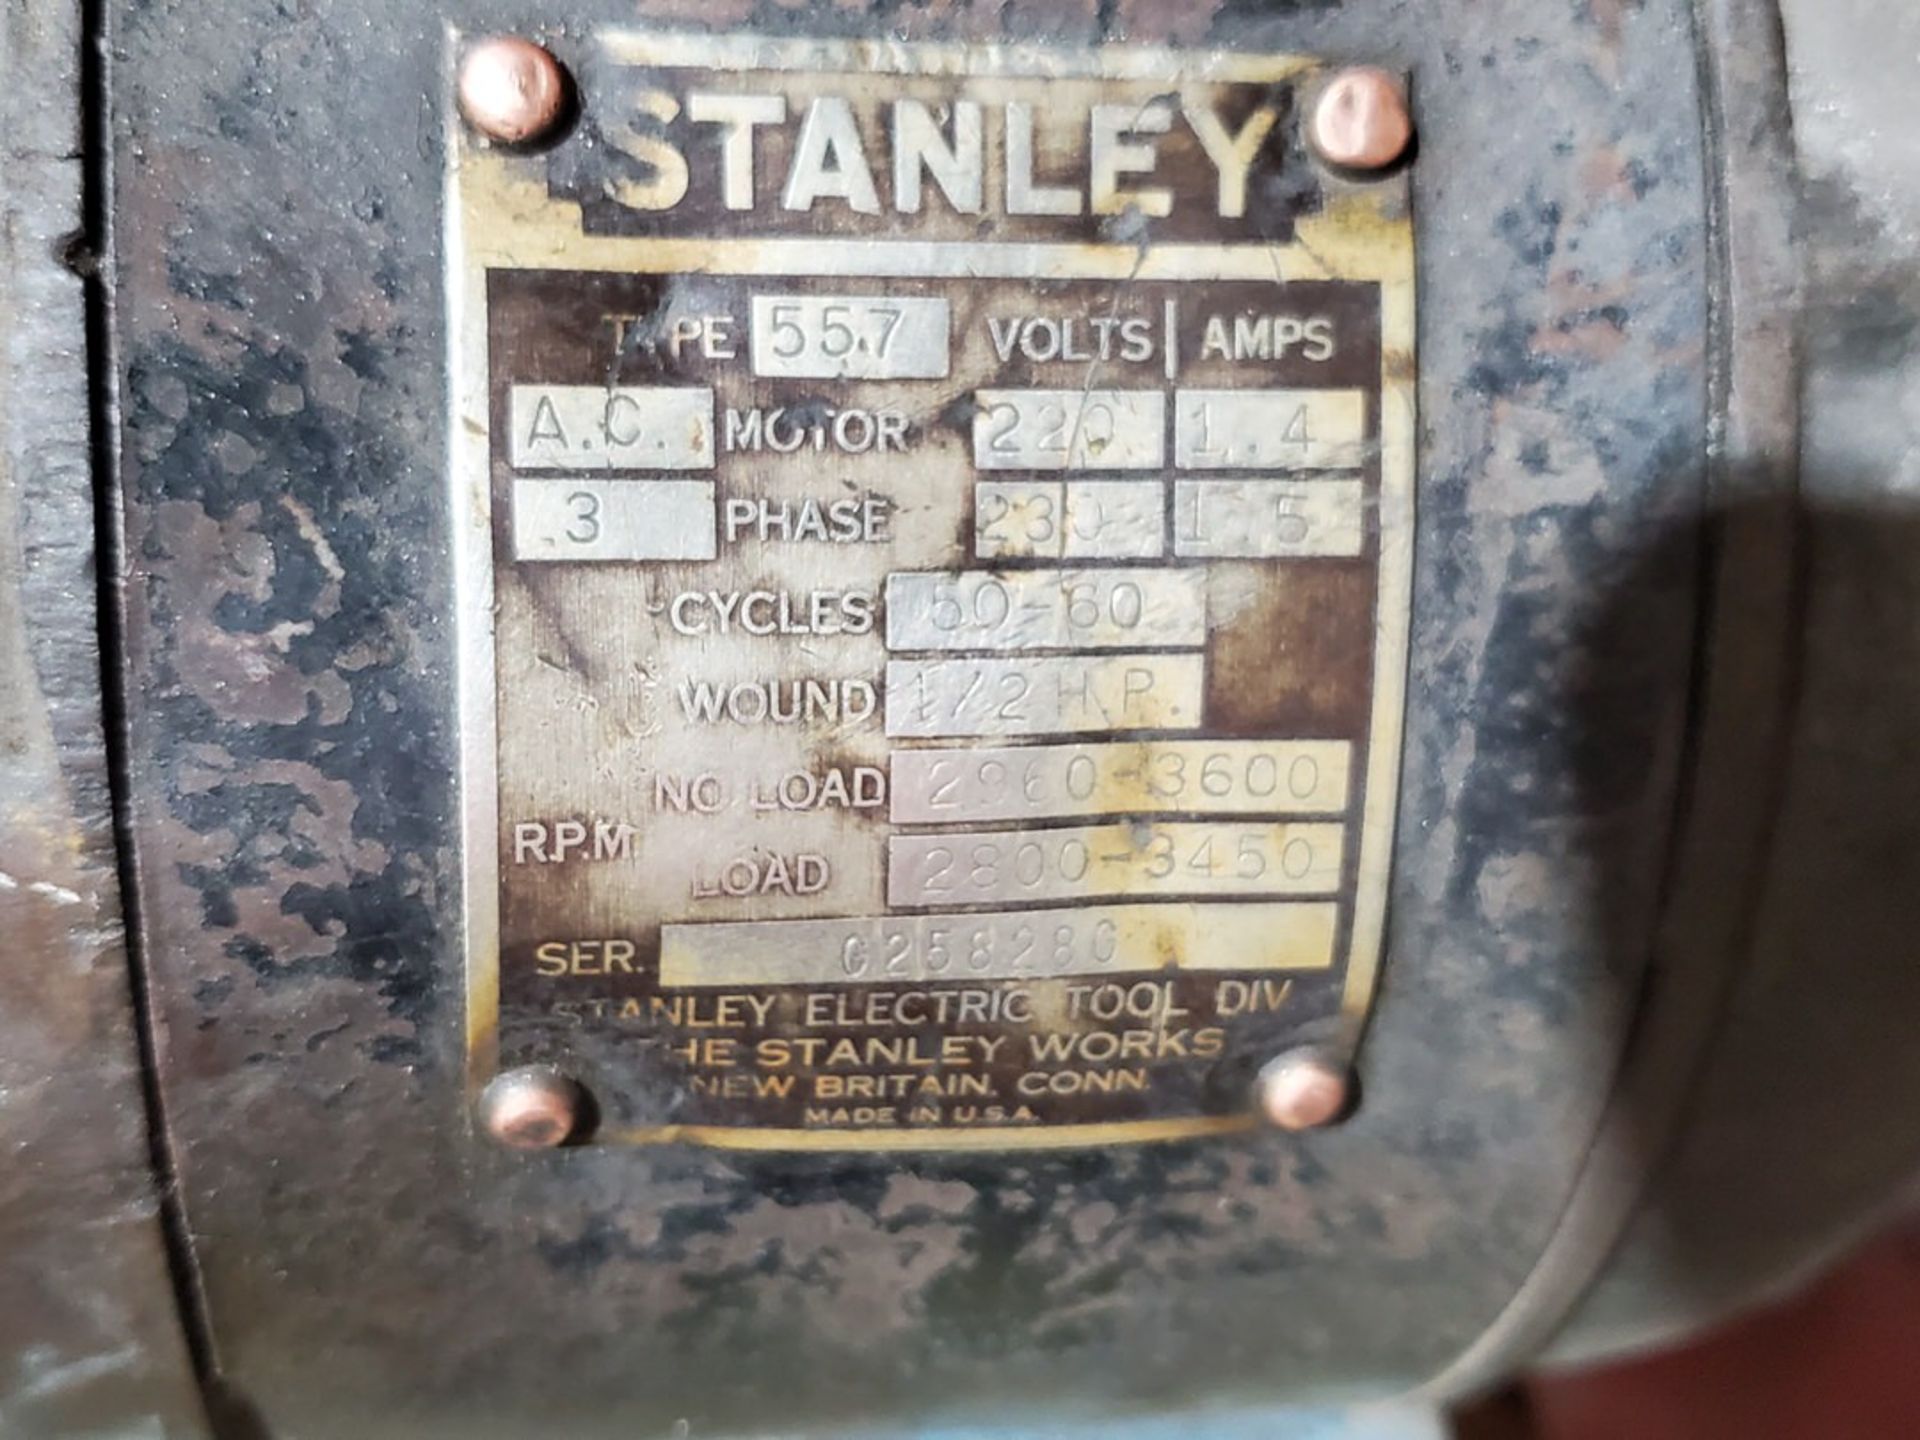 Stanley 55.7 Pedestal Grinder 230V, 3PH, 50-60HZ, 1/2HP - Image 5 of 5